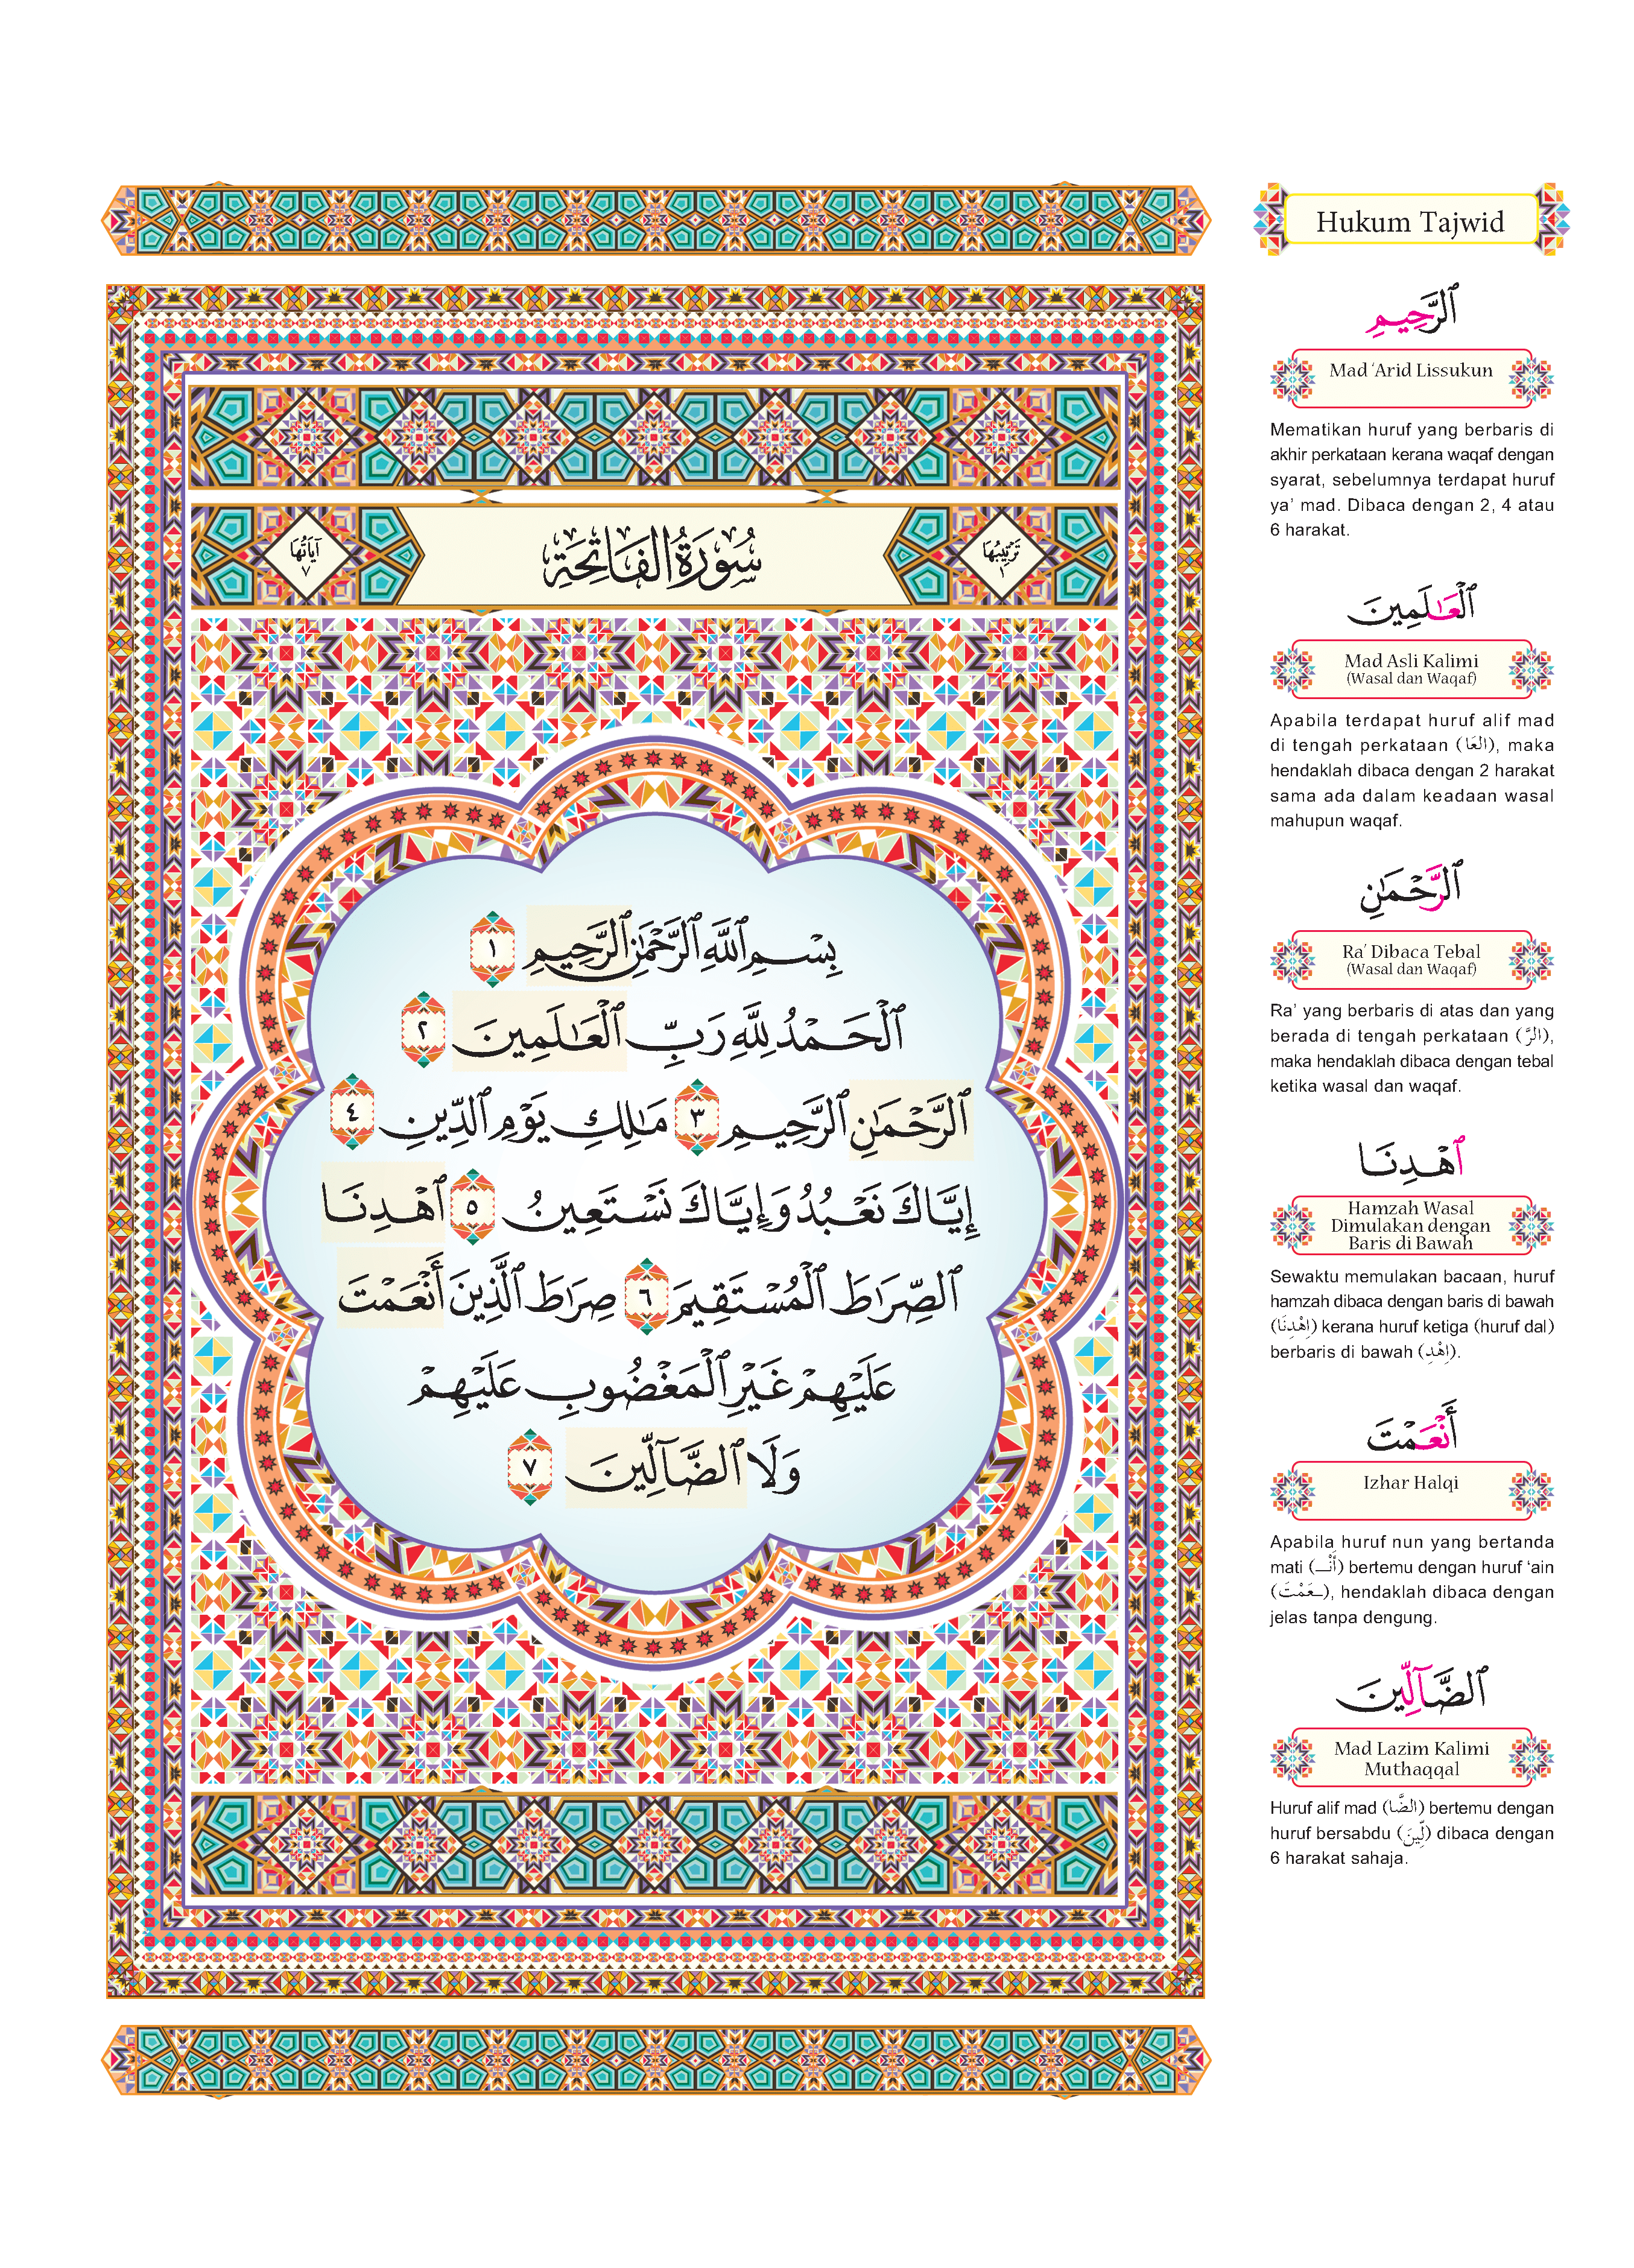 Al-Quran Al-Karim Al-Mujawwad Dengan Panduan Waqaf & Ibtida’ - (TBAQ1062)